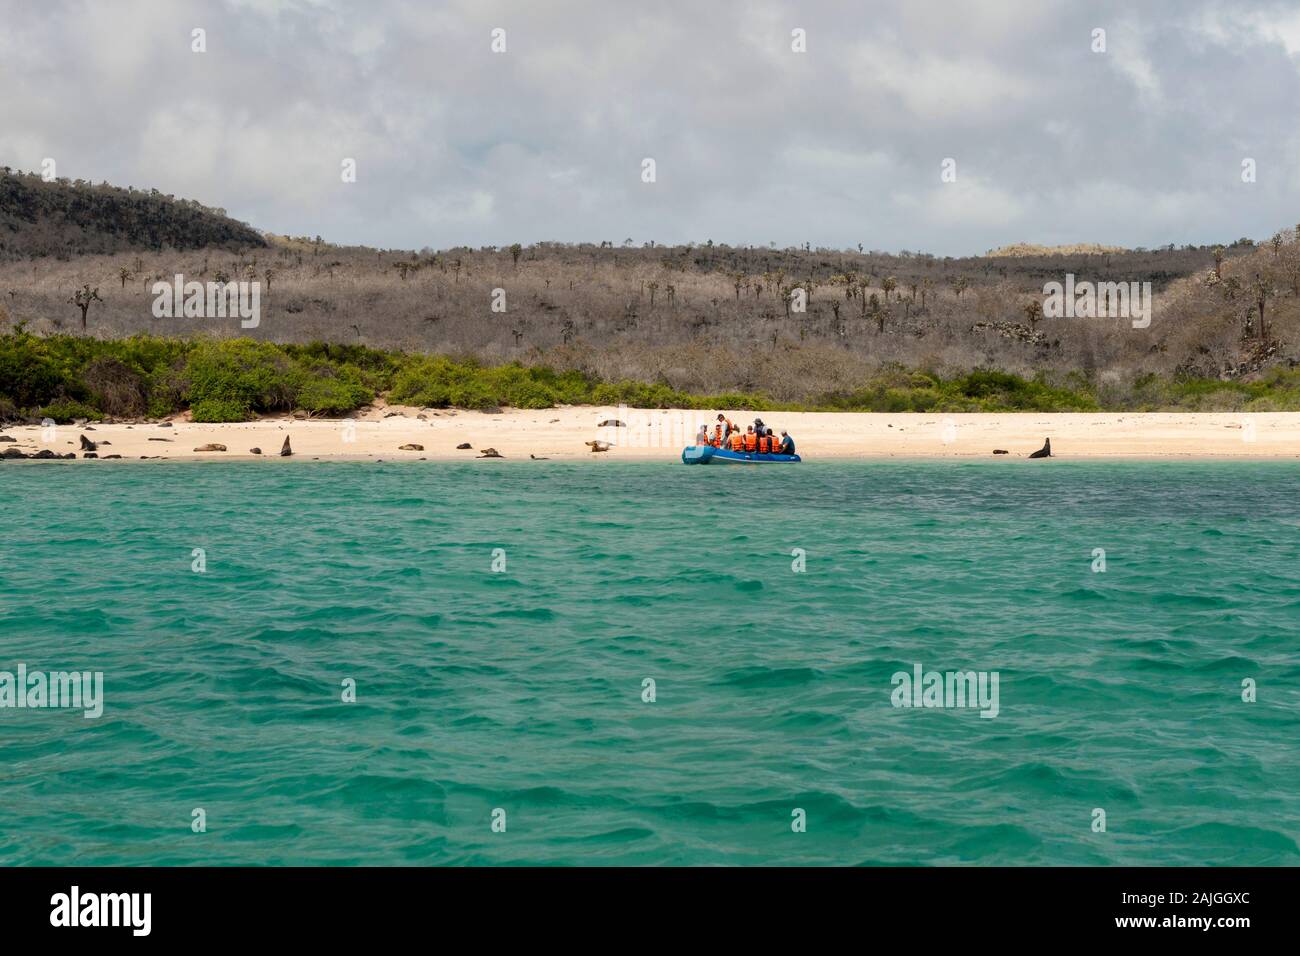 Les touristes sur un canot arrivant à Sante Fe, l'île de Galapagos, Équateur. Banque D'Images